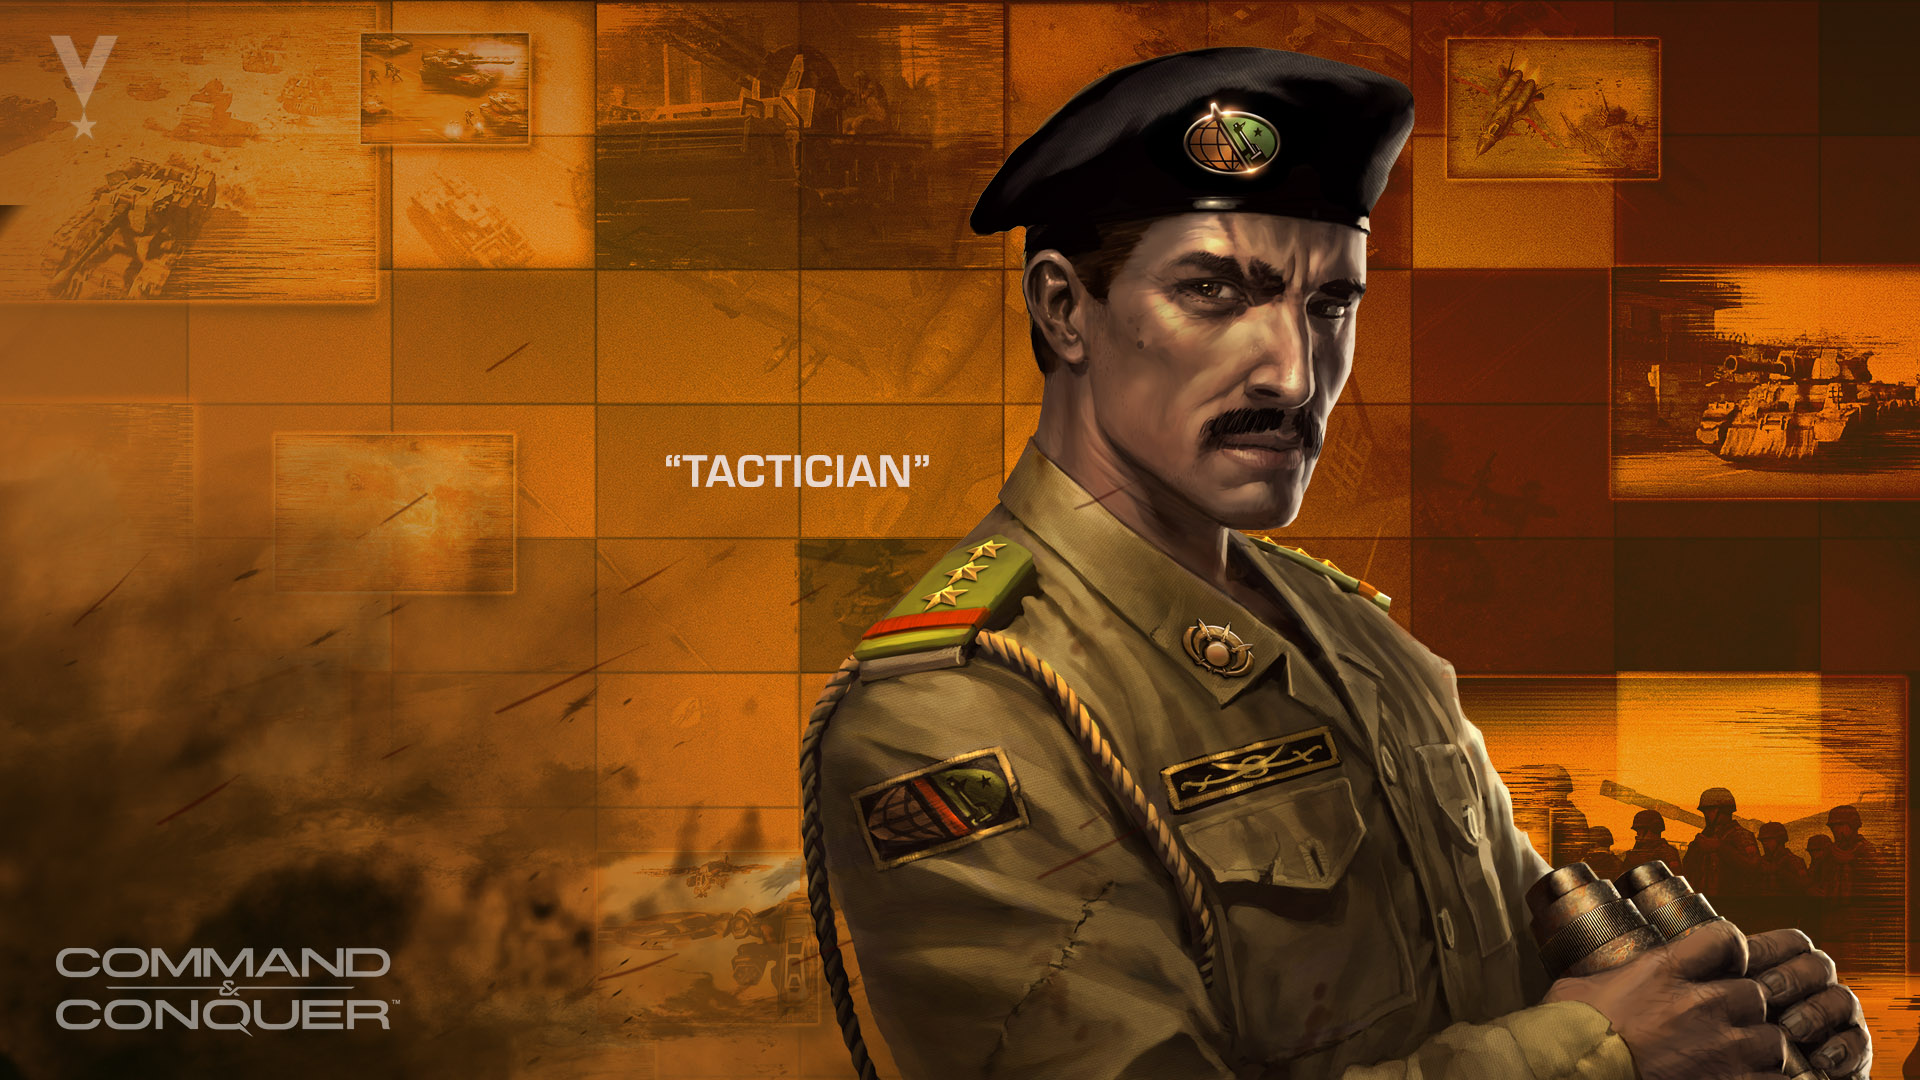 Tactician image - C&C: Generals 2.